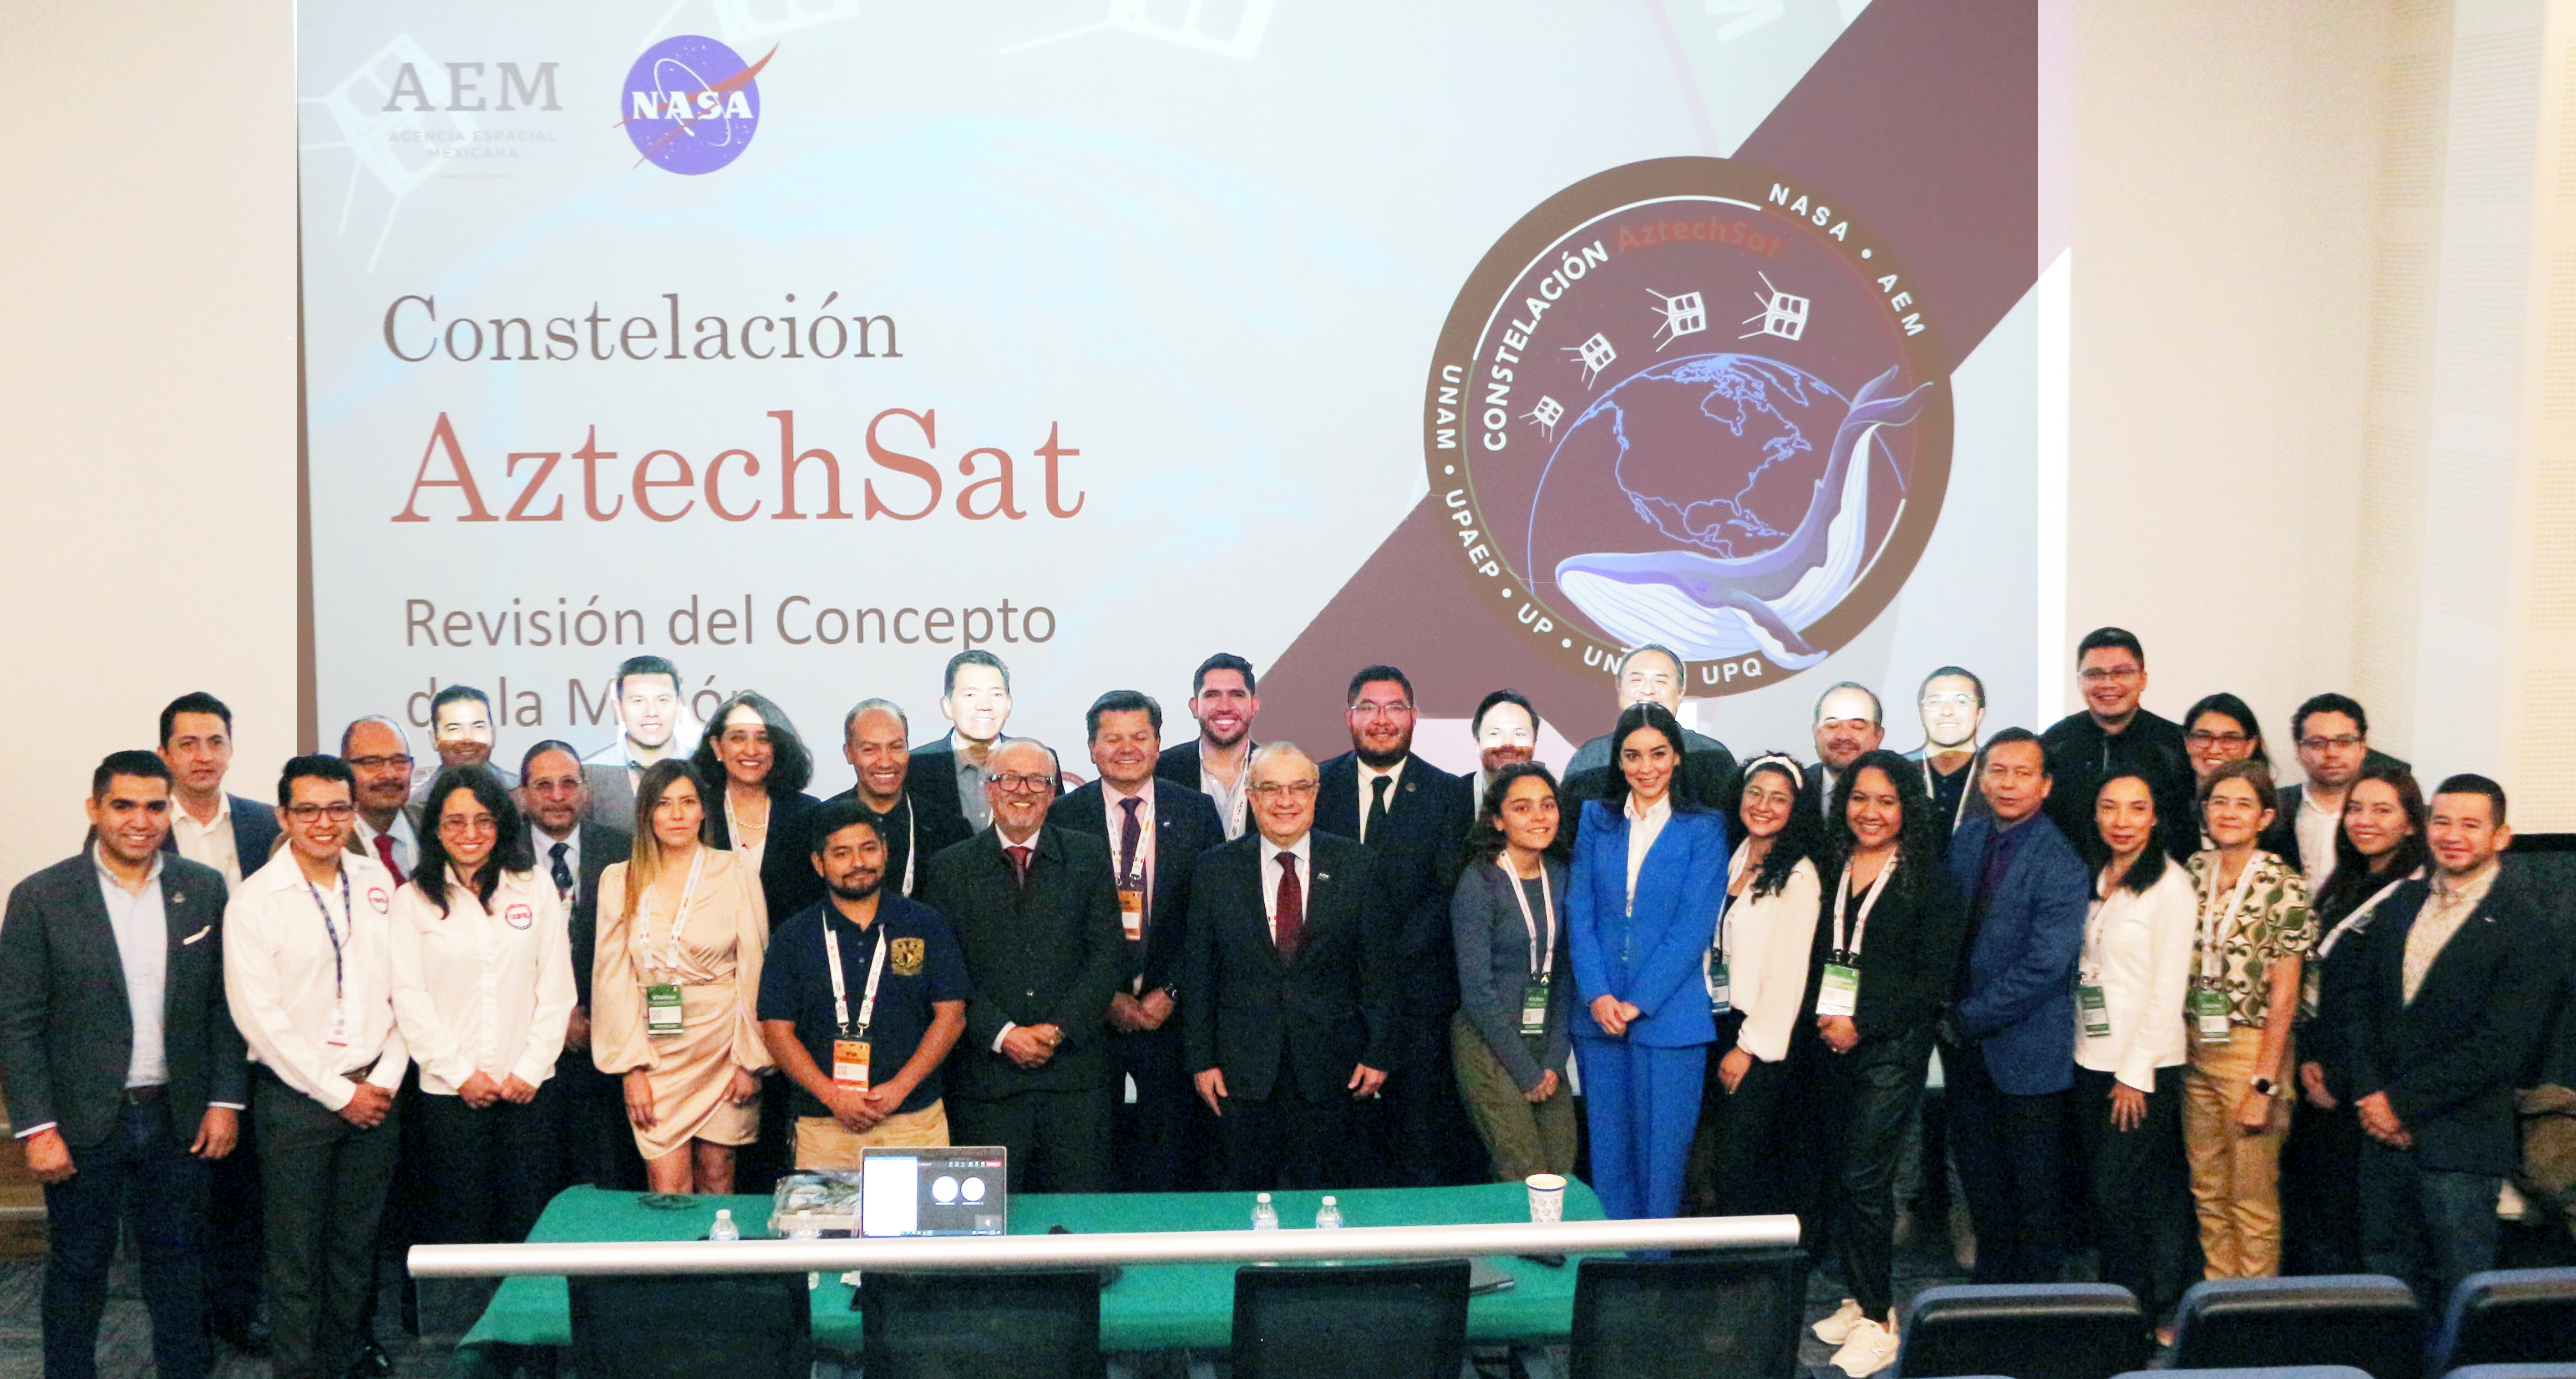 Proyecto satelital “Constelación Aztechsat” concluye primera fase y es reconocido por NASA